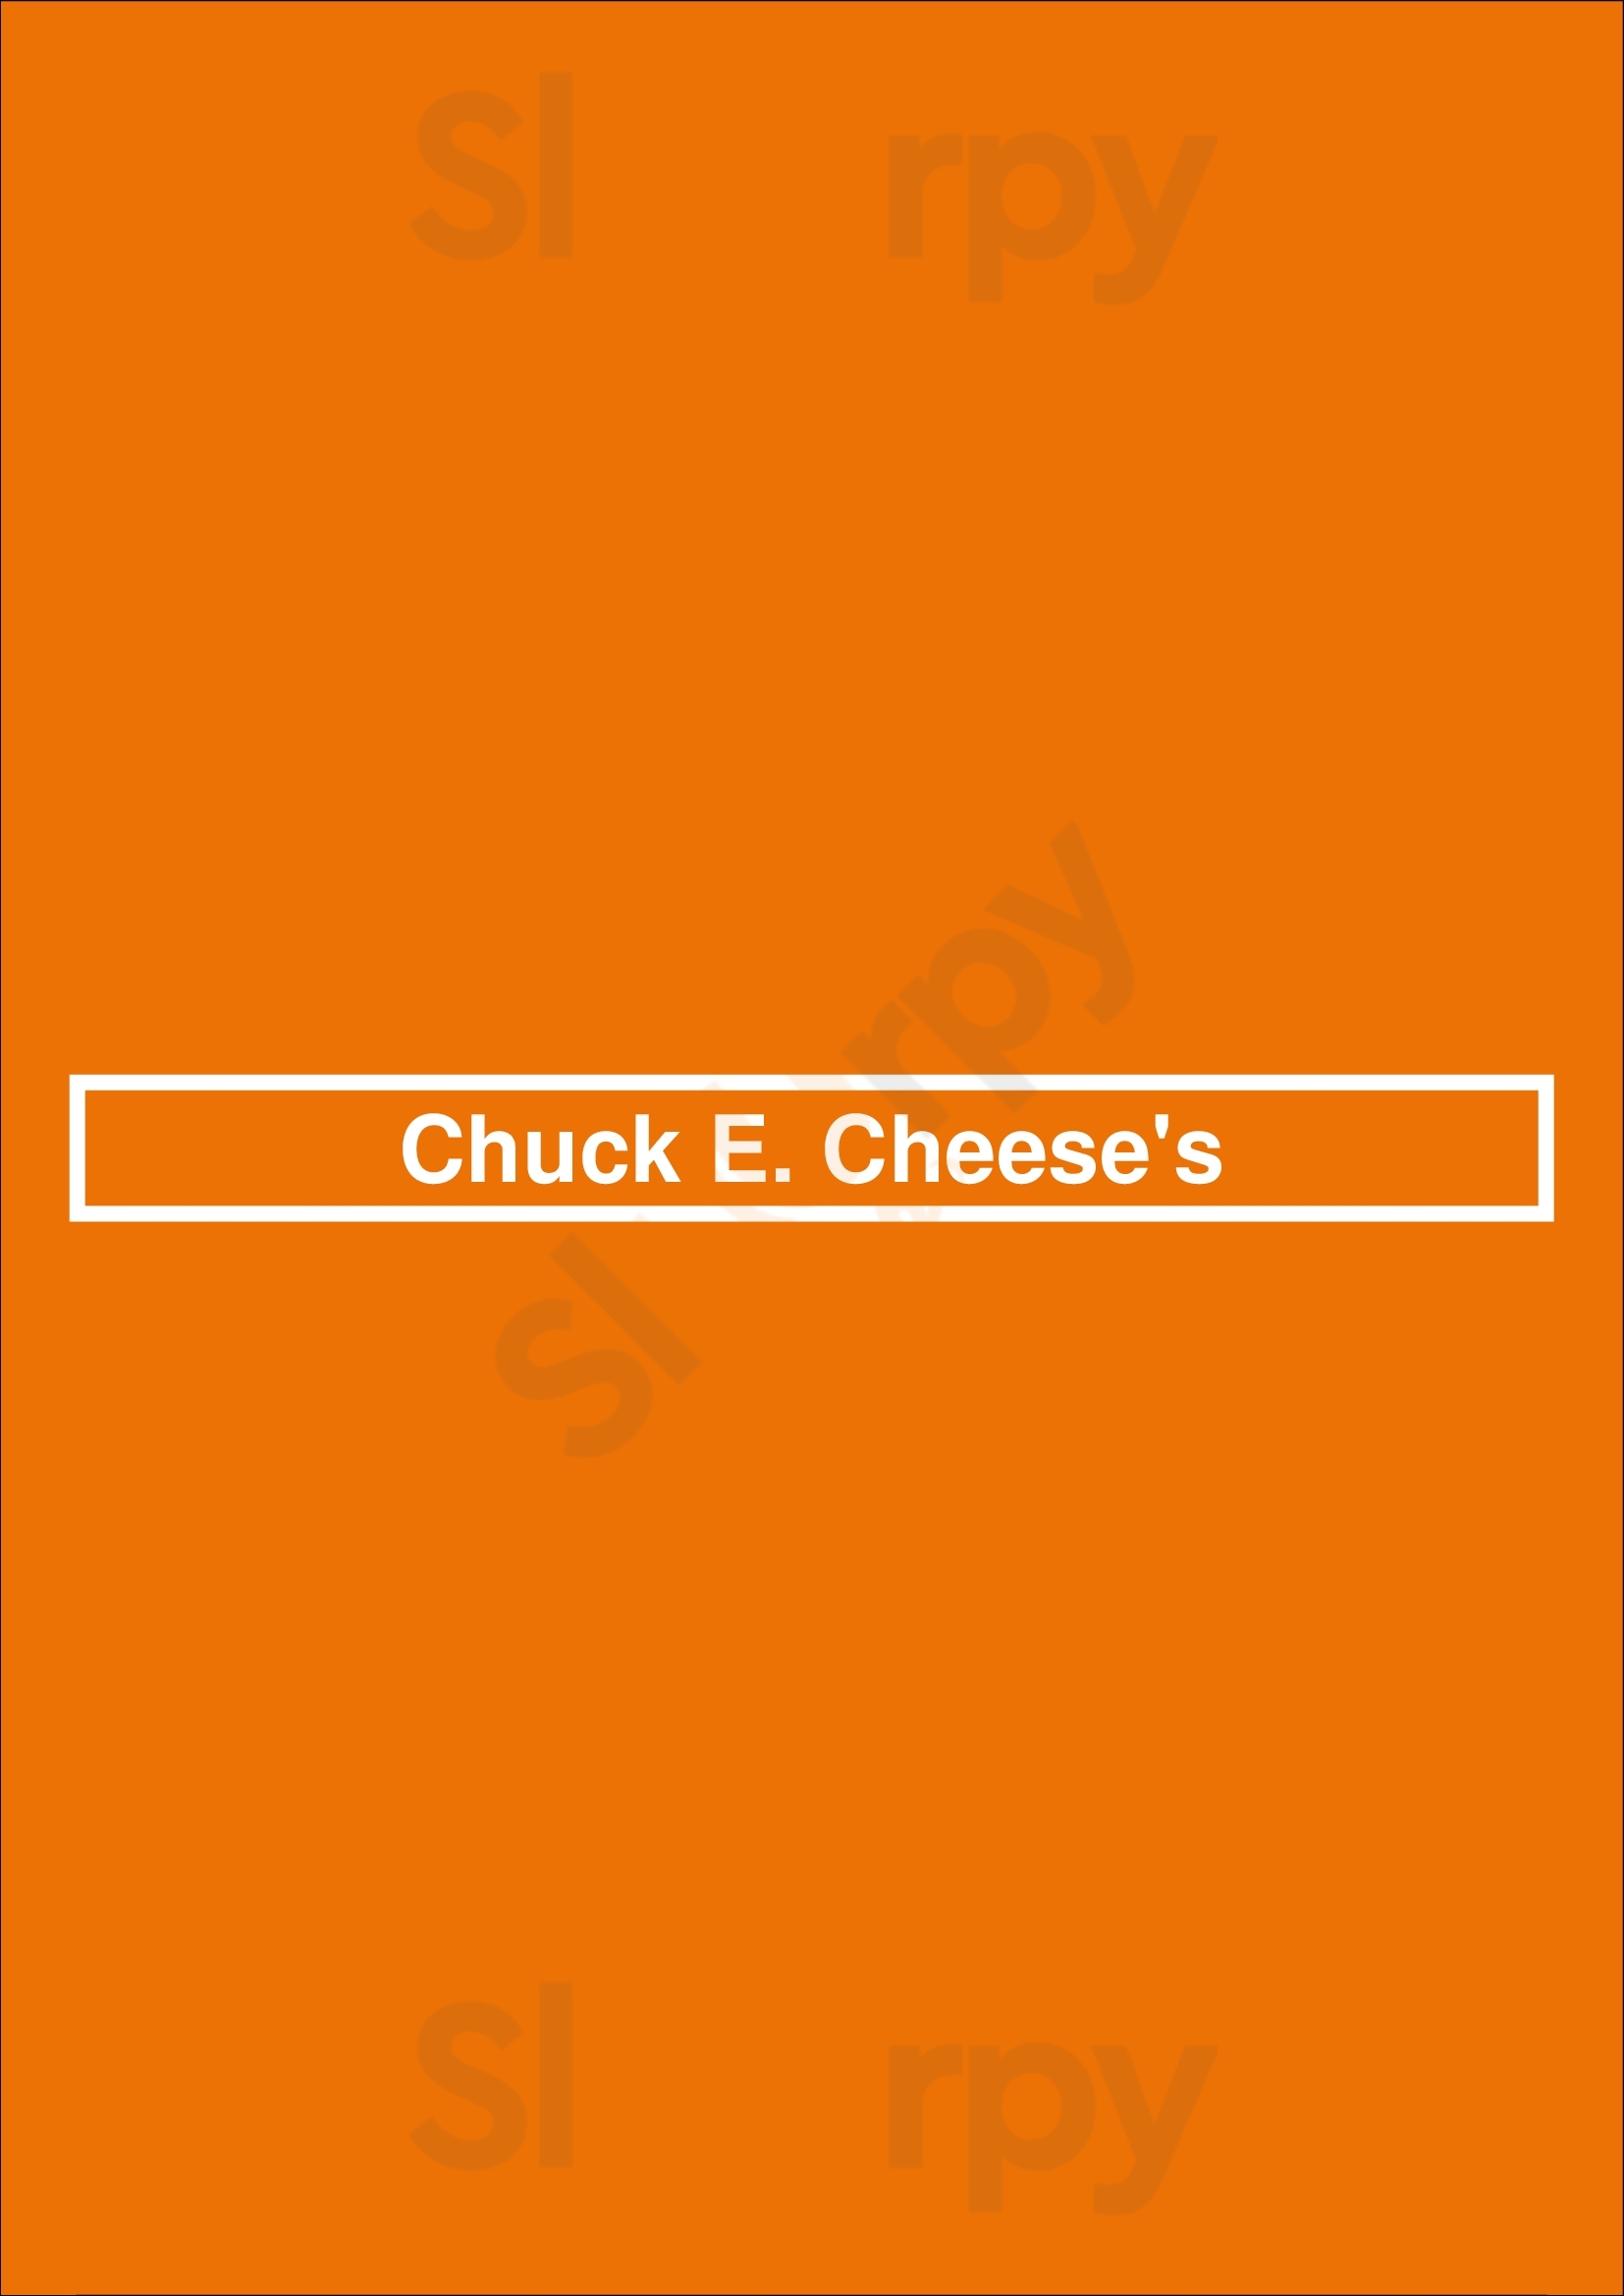 Chuck E. Cheese Albuquerque Menu - 1